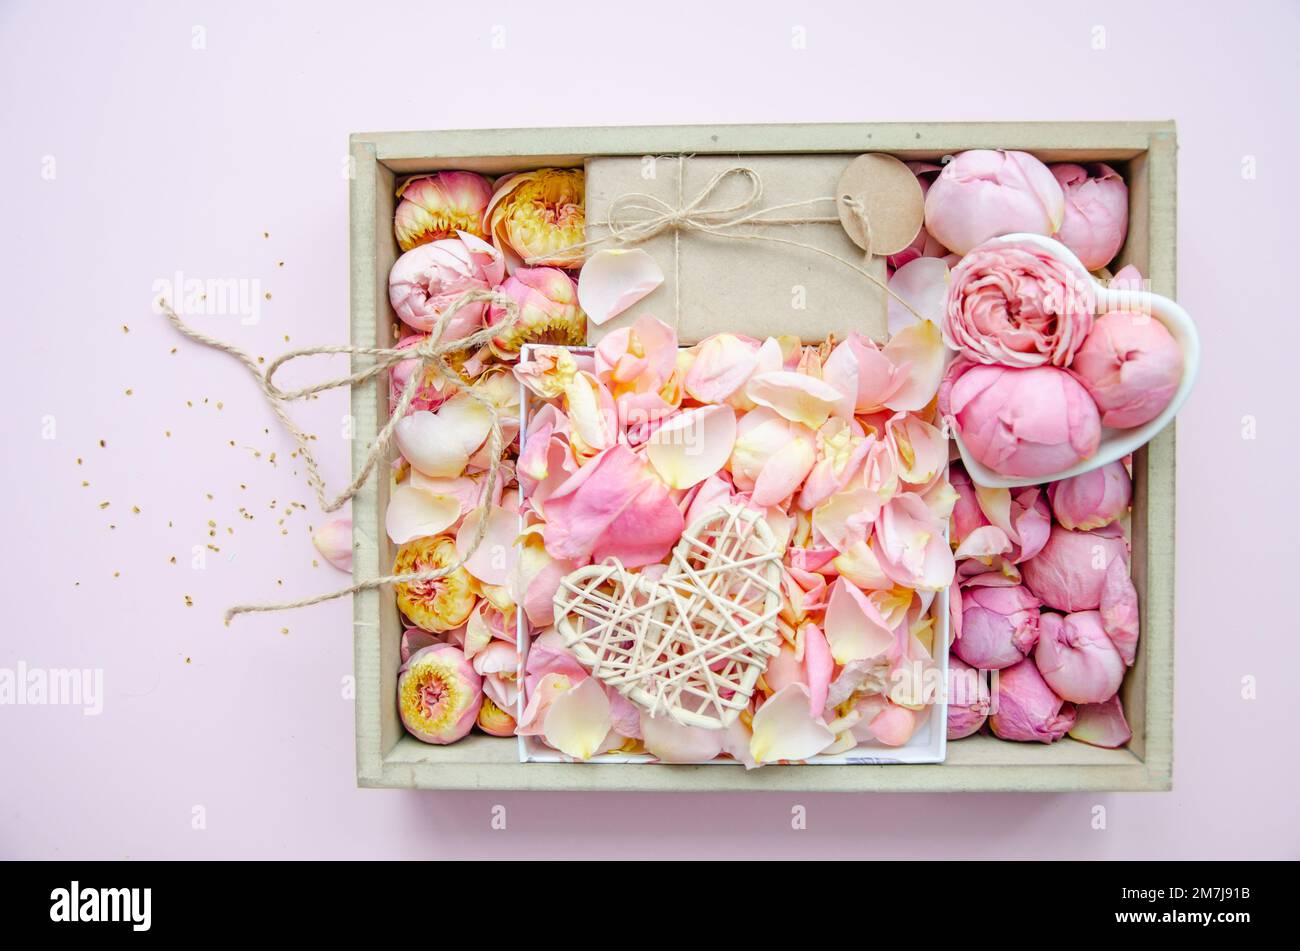 Boîte-cadeau, boutons roses et pétales. Fleurs fraîches, cadeau artisanal, coeur enchevêtré en paille. Roses dans une boîte roses roses, roses jaunes. Mode. Minimalisme. Valen Banque D'Images